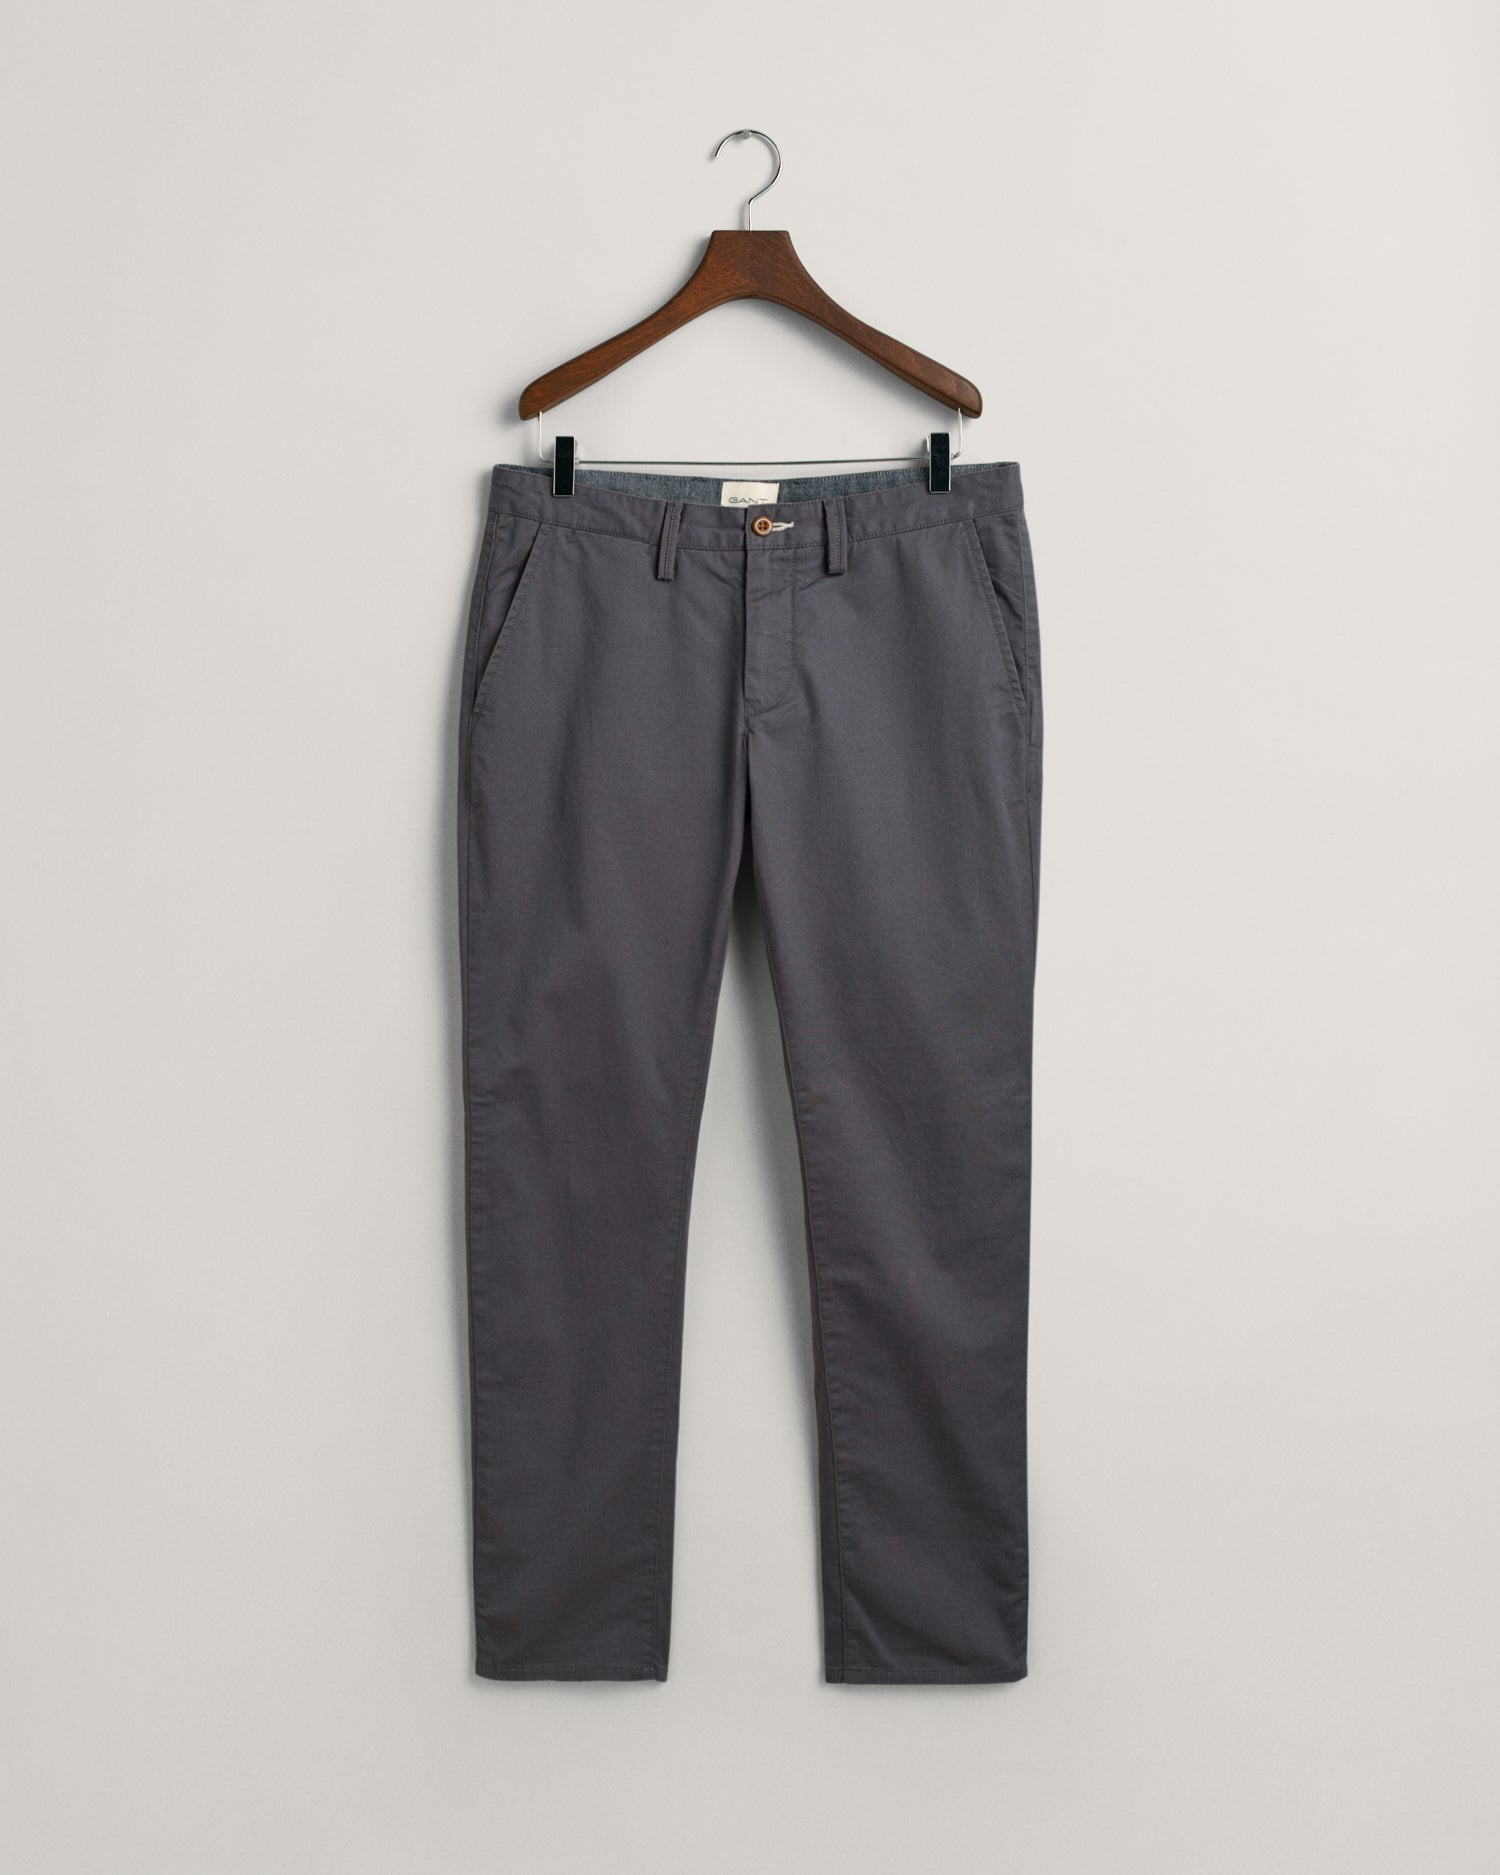 VAN HEUSEN Slim Fit Men Grey Trousers - Buy VAN HEUSEN Slim Fit Men Grey  Trousers Online at Best Prices in India | Flipkart.com